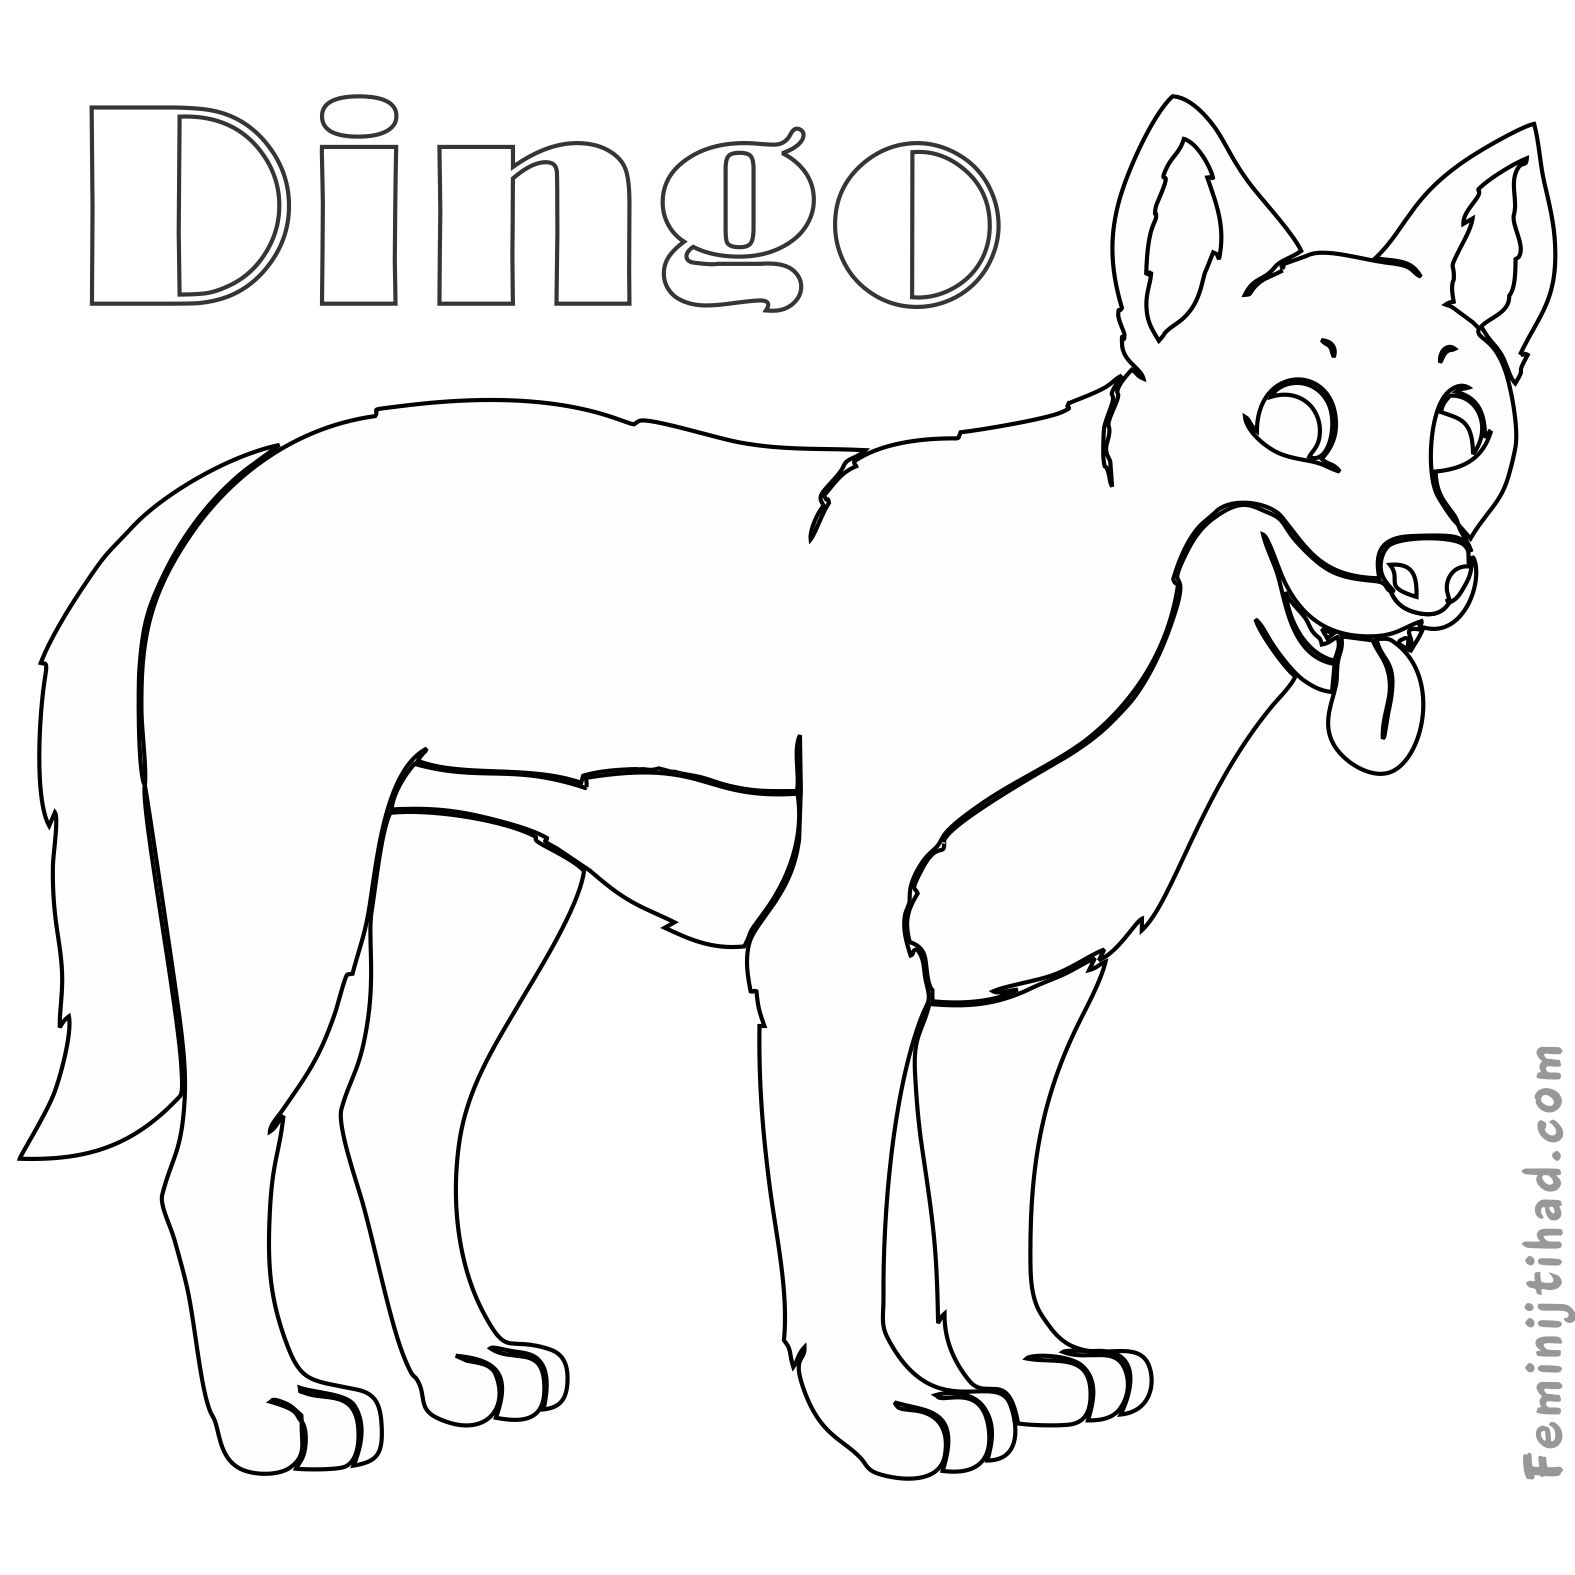 Собака динго распечатать. Собака Динго раскраска для детей. Собака Динго рисунок для детей. Собака Бинго раскраска для детей. Динго карандашом.